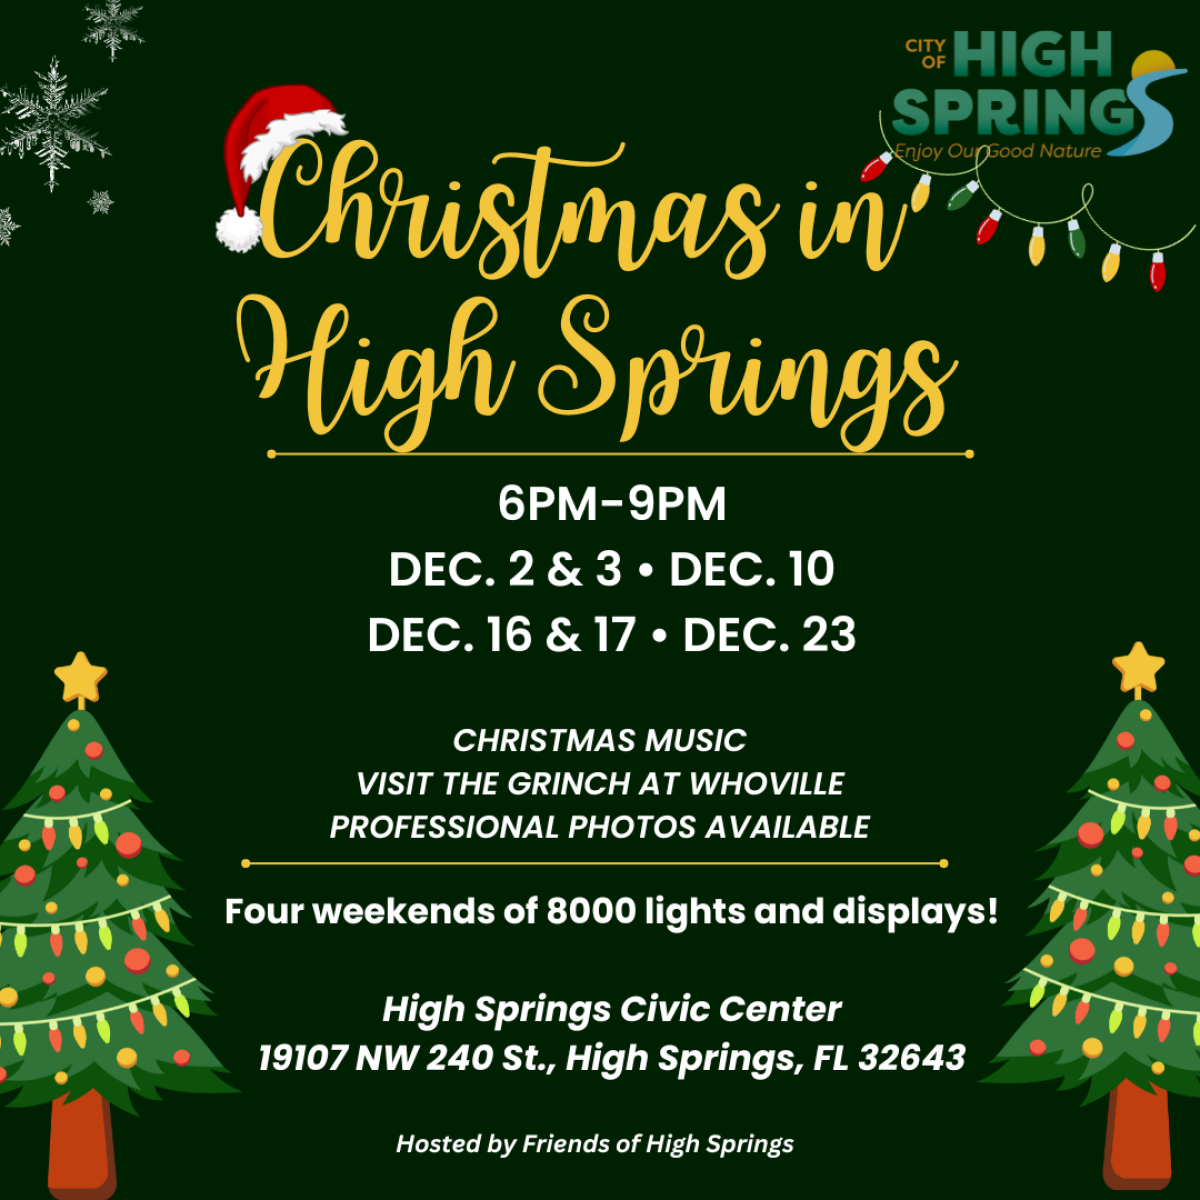 Christmas in High Springs Light Display event. Each weekend in December.